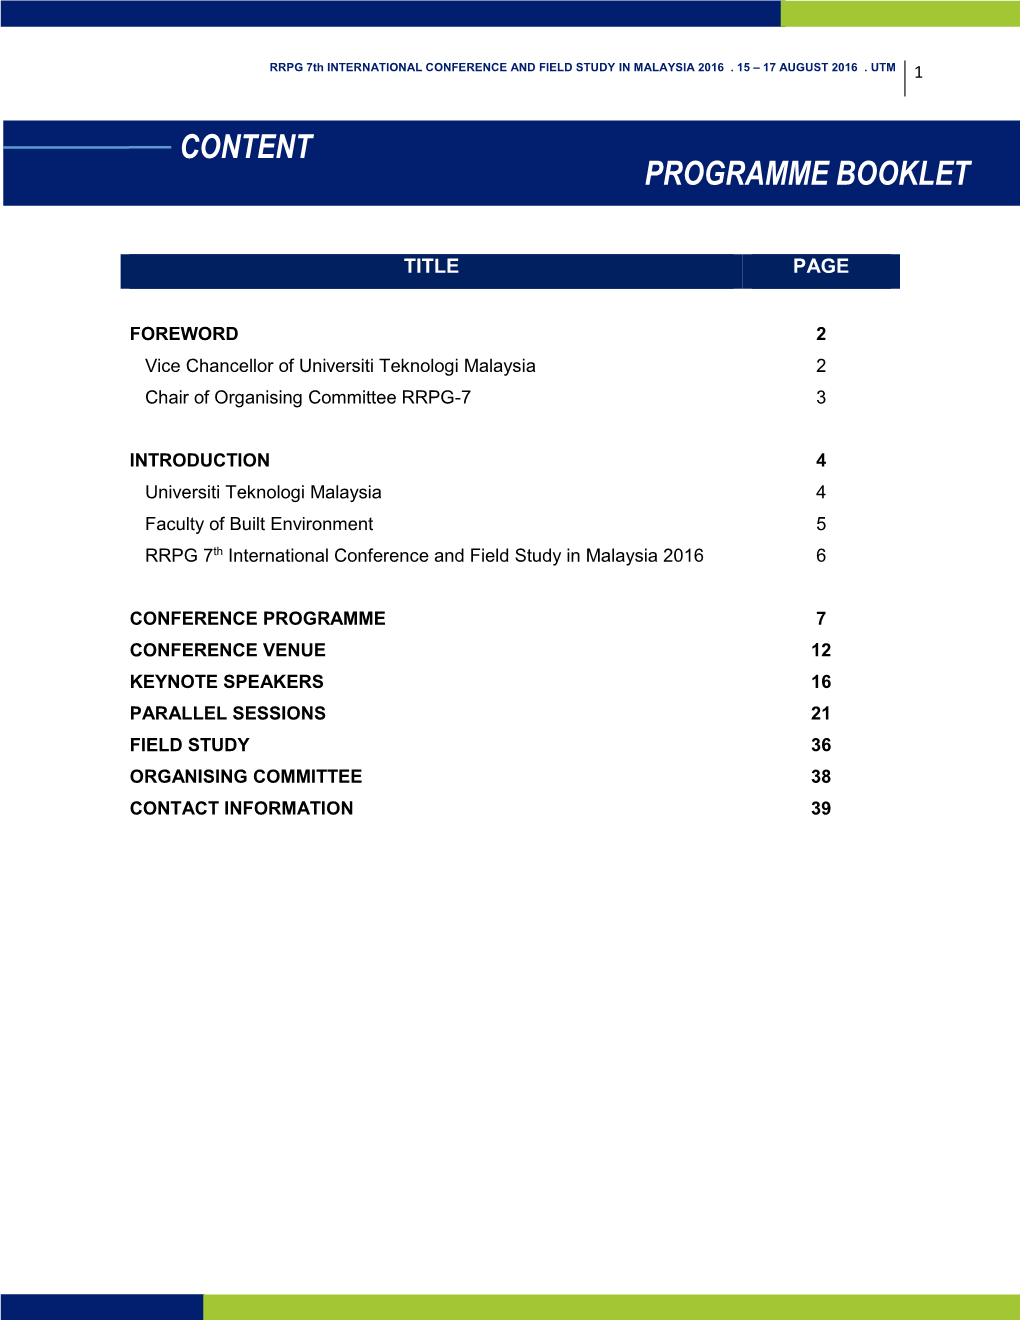 Contents Programme Booklet Content